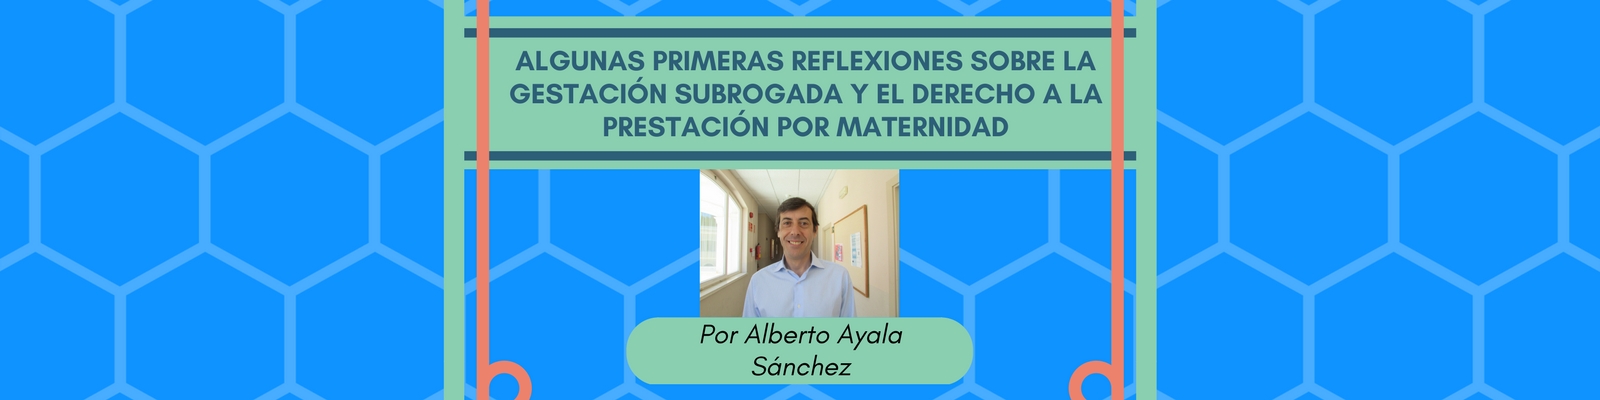 Algunas primeras reflexiones sobre la gestación subrogada y el derecho a la prestación por maternidad. Por Alberto Ayala Sánchez